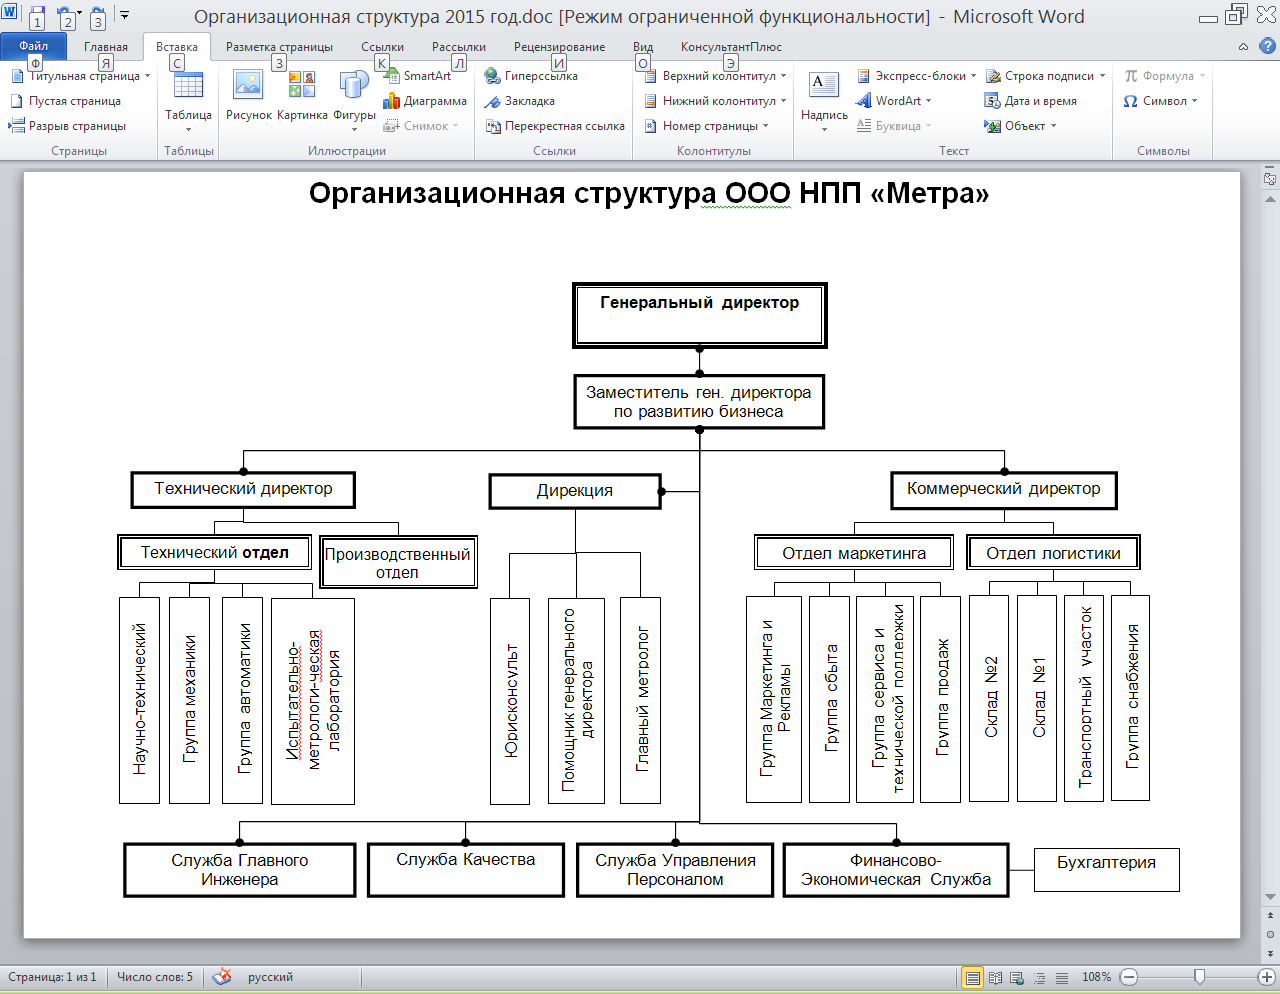 Организационная структура управления промышленного предприятия